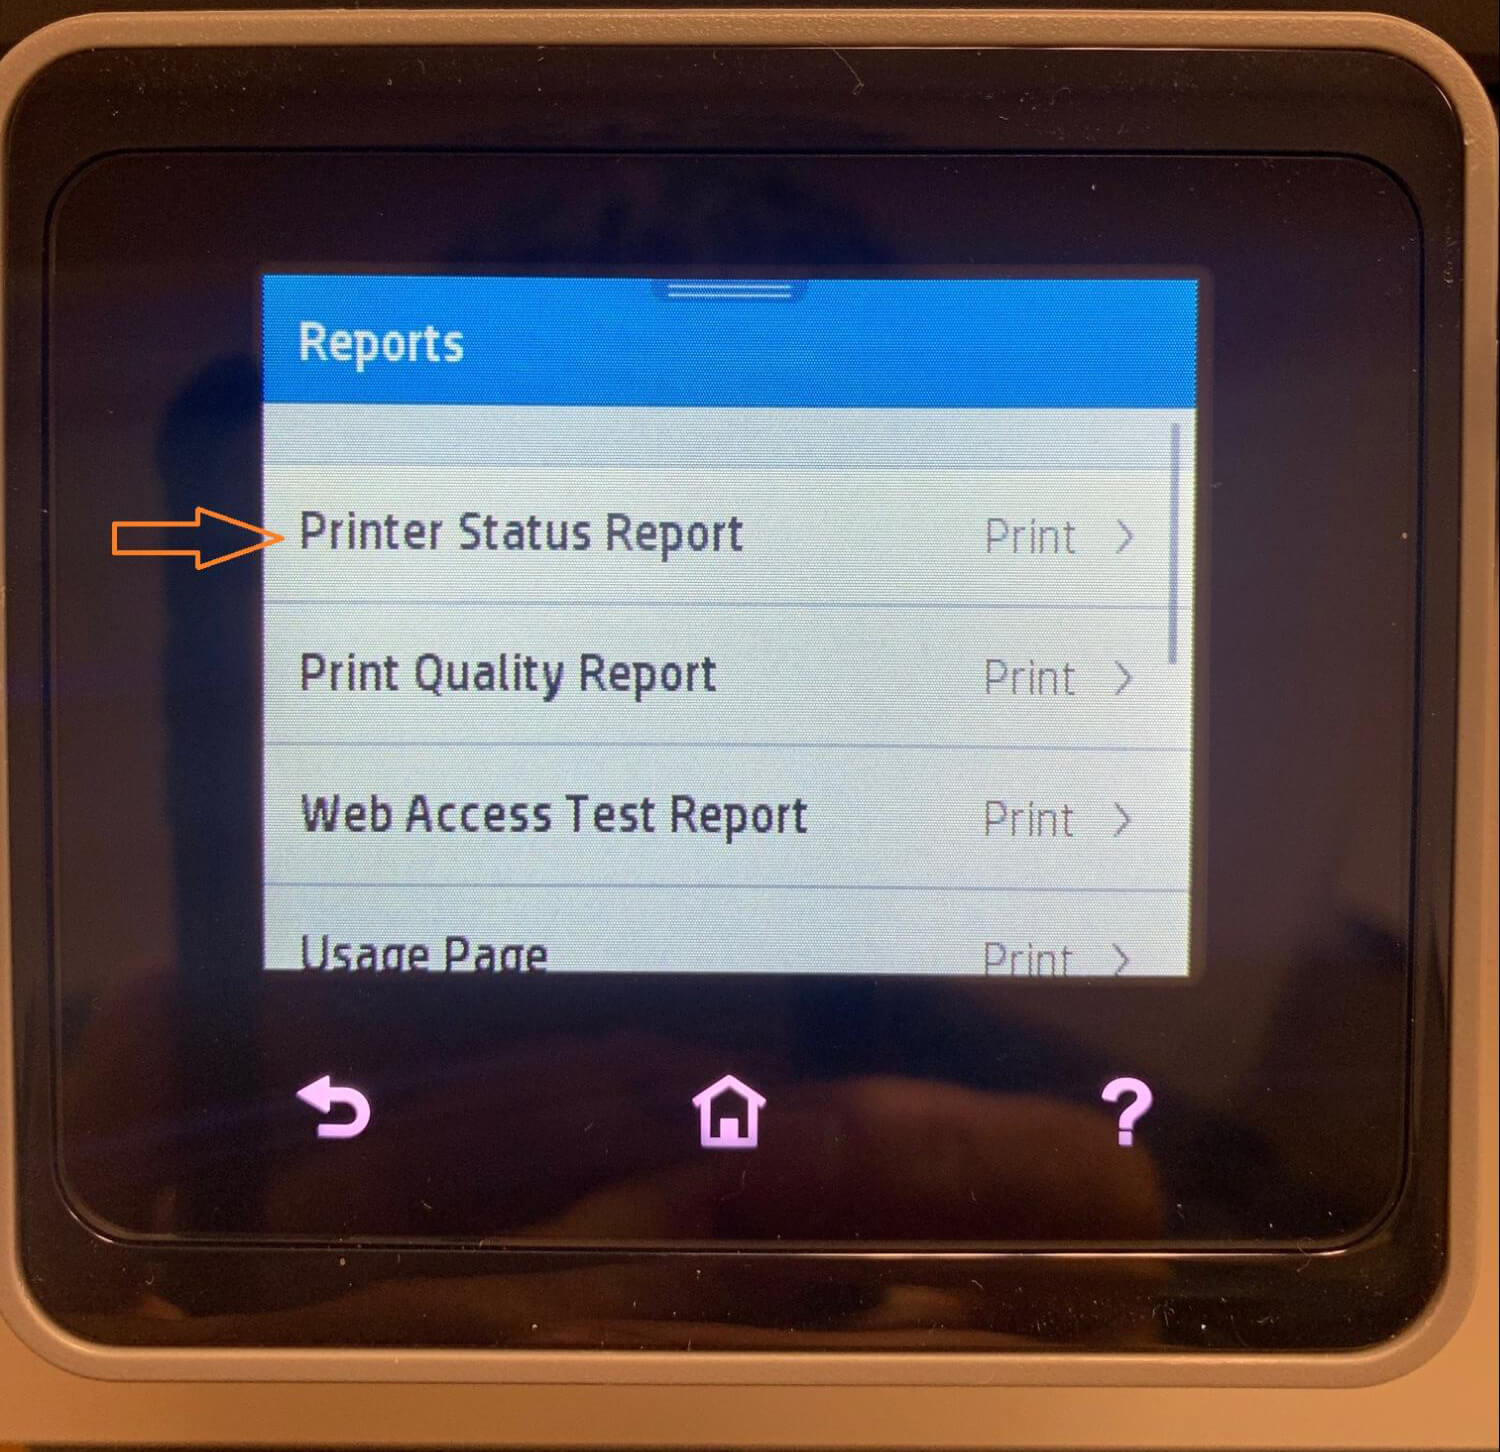 Printer Status Report on Reports menu